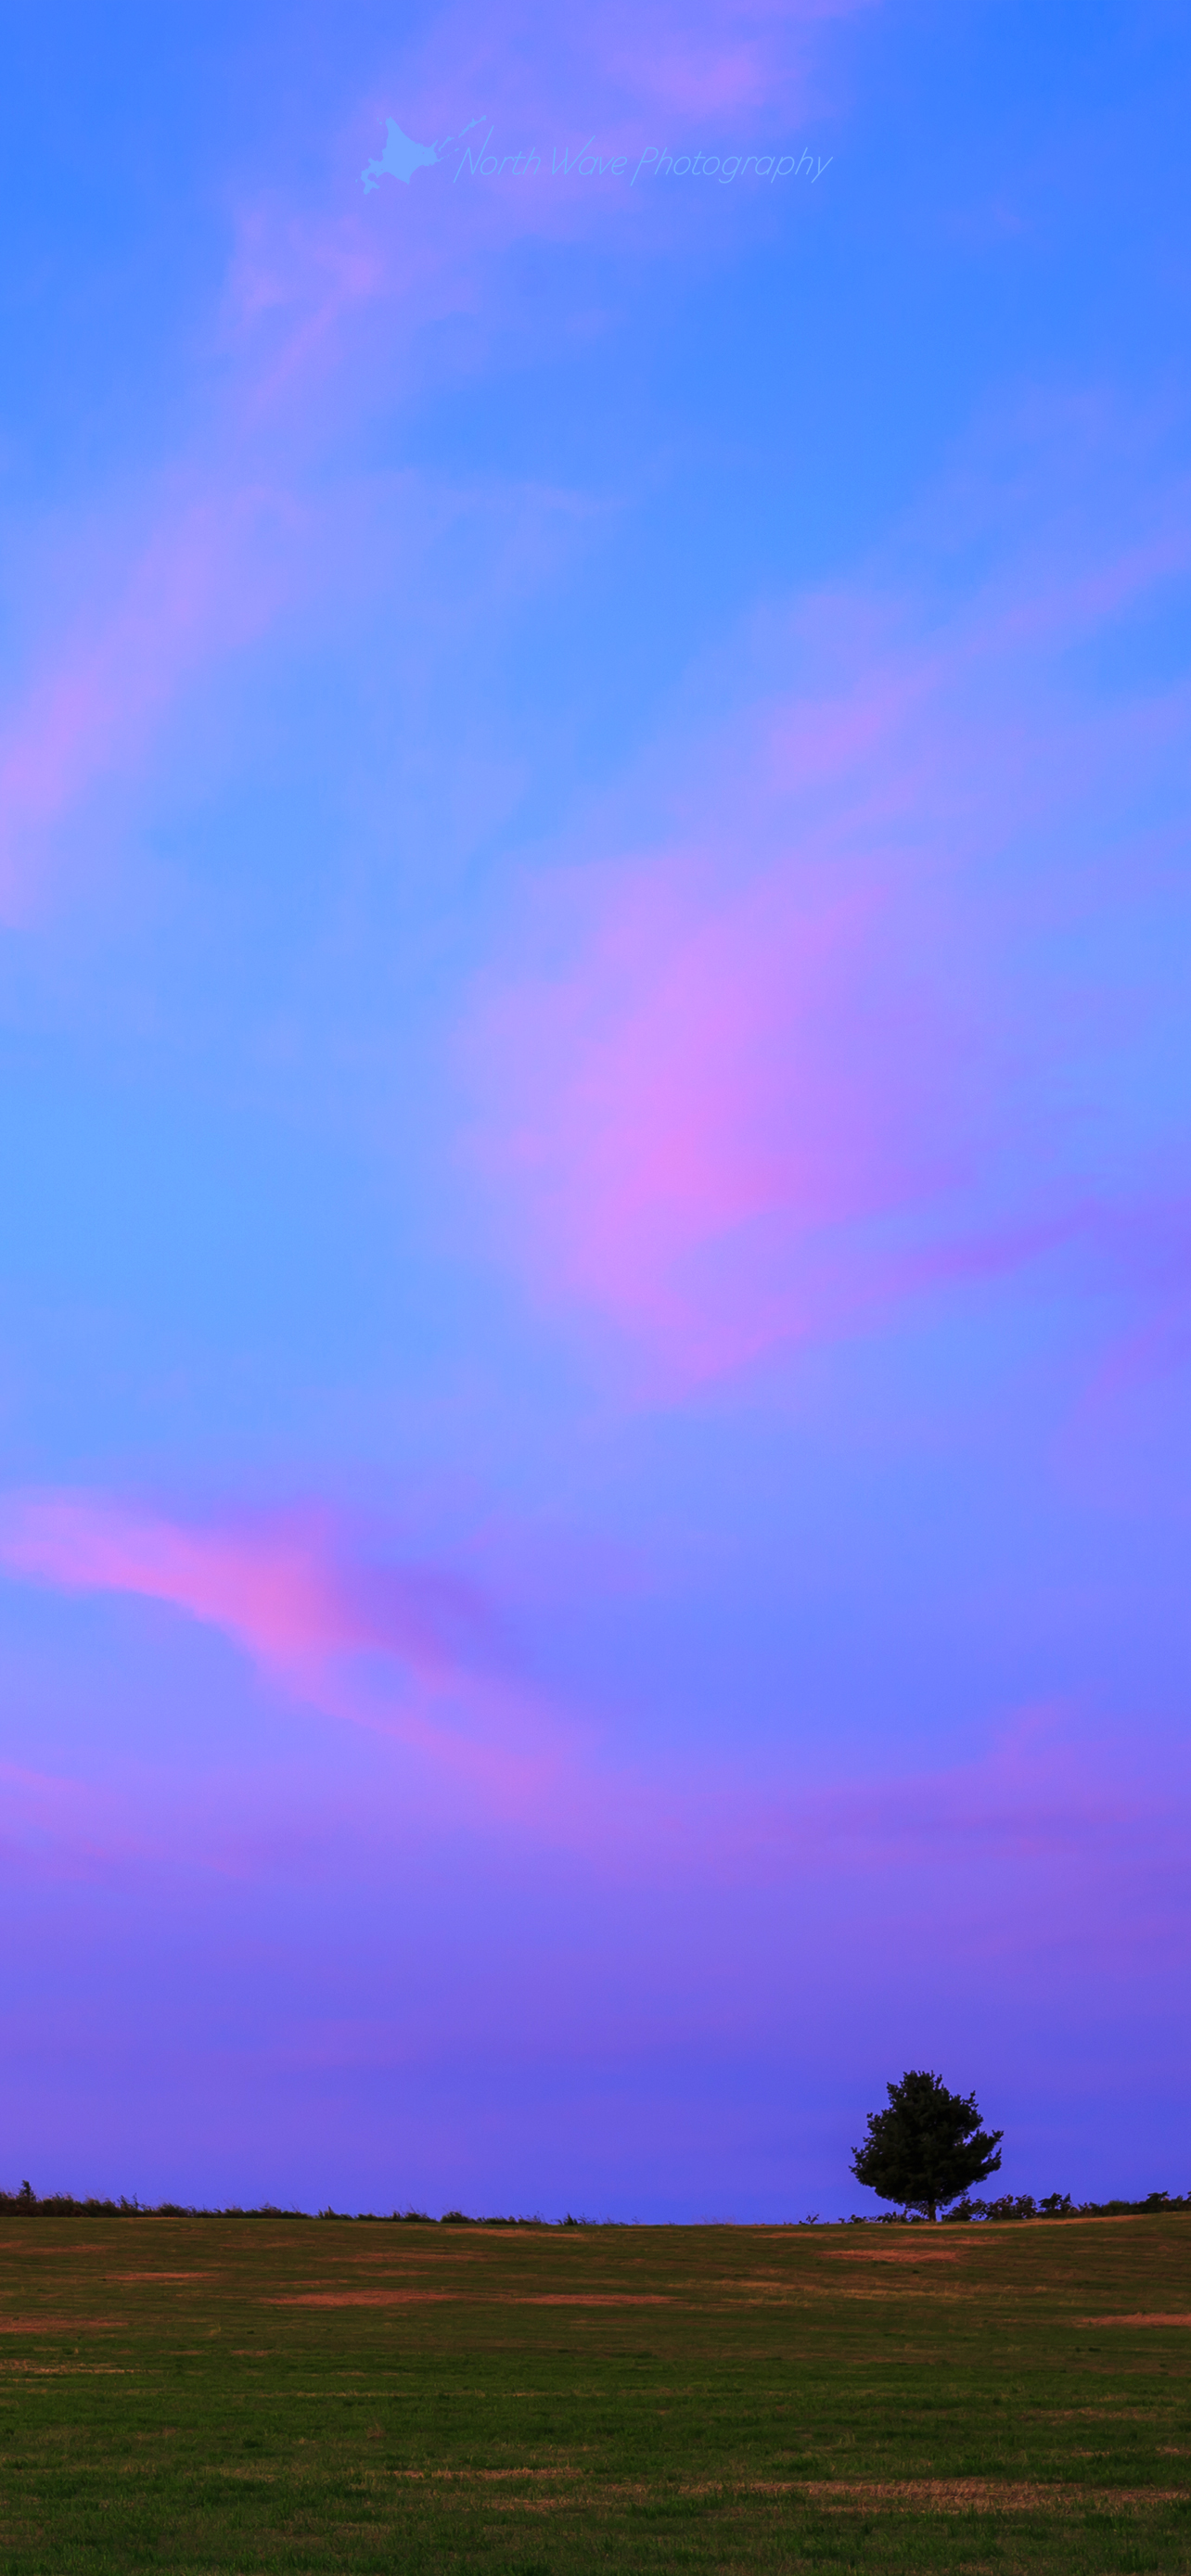 北海道の風景壁紙 ピンク色の朝焼けと一本木 No 31 North Wave Photography